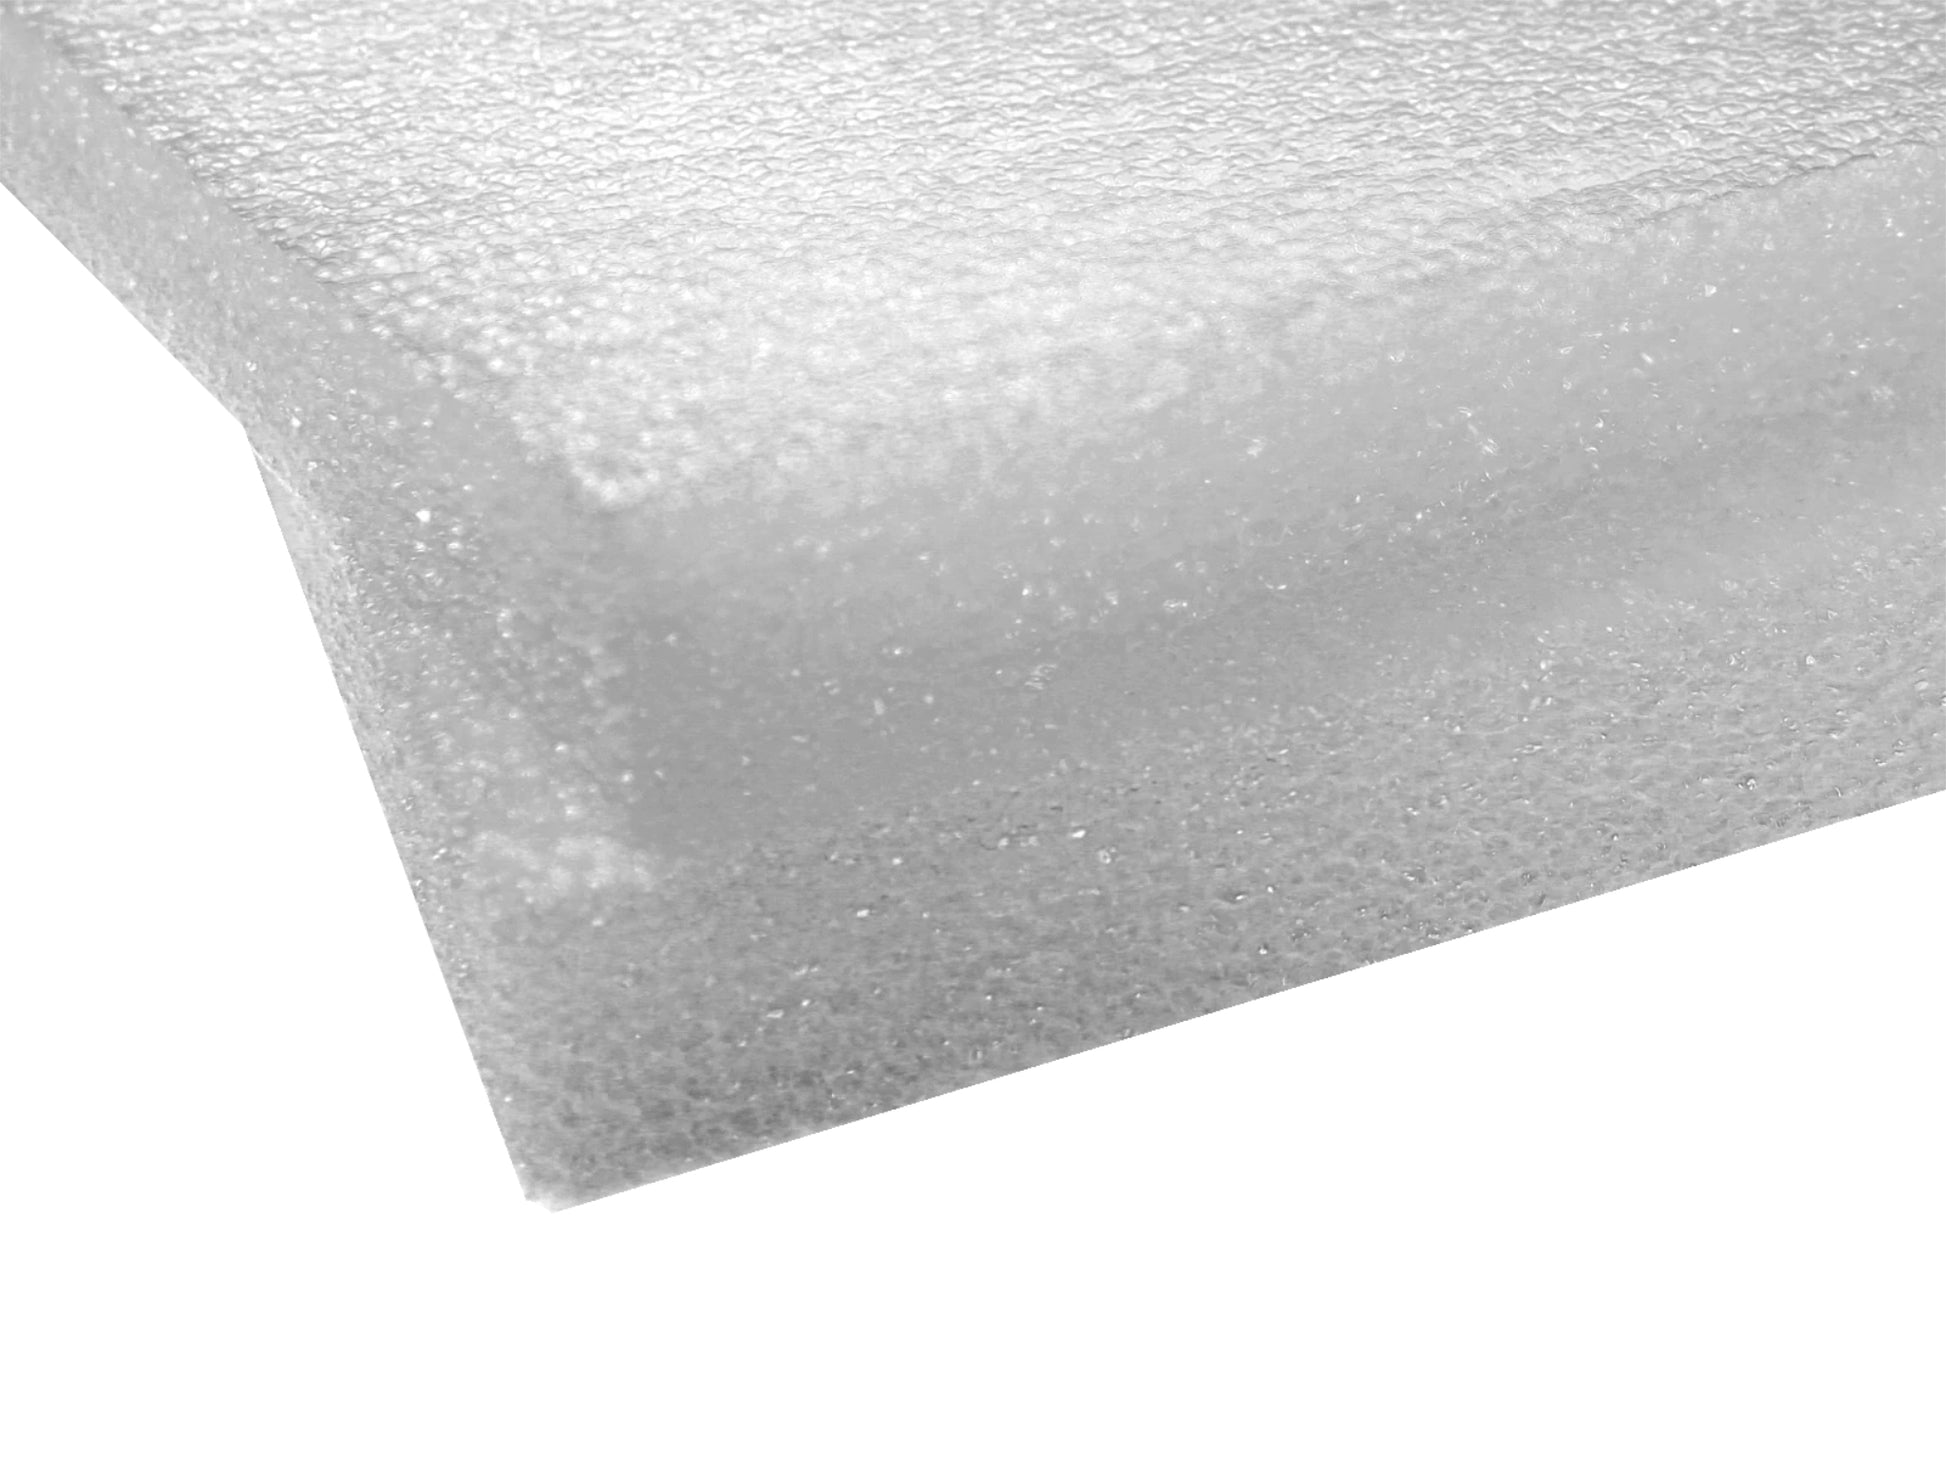 Polyethylene Foam Sheet 1.5 White Pack